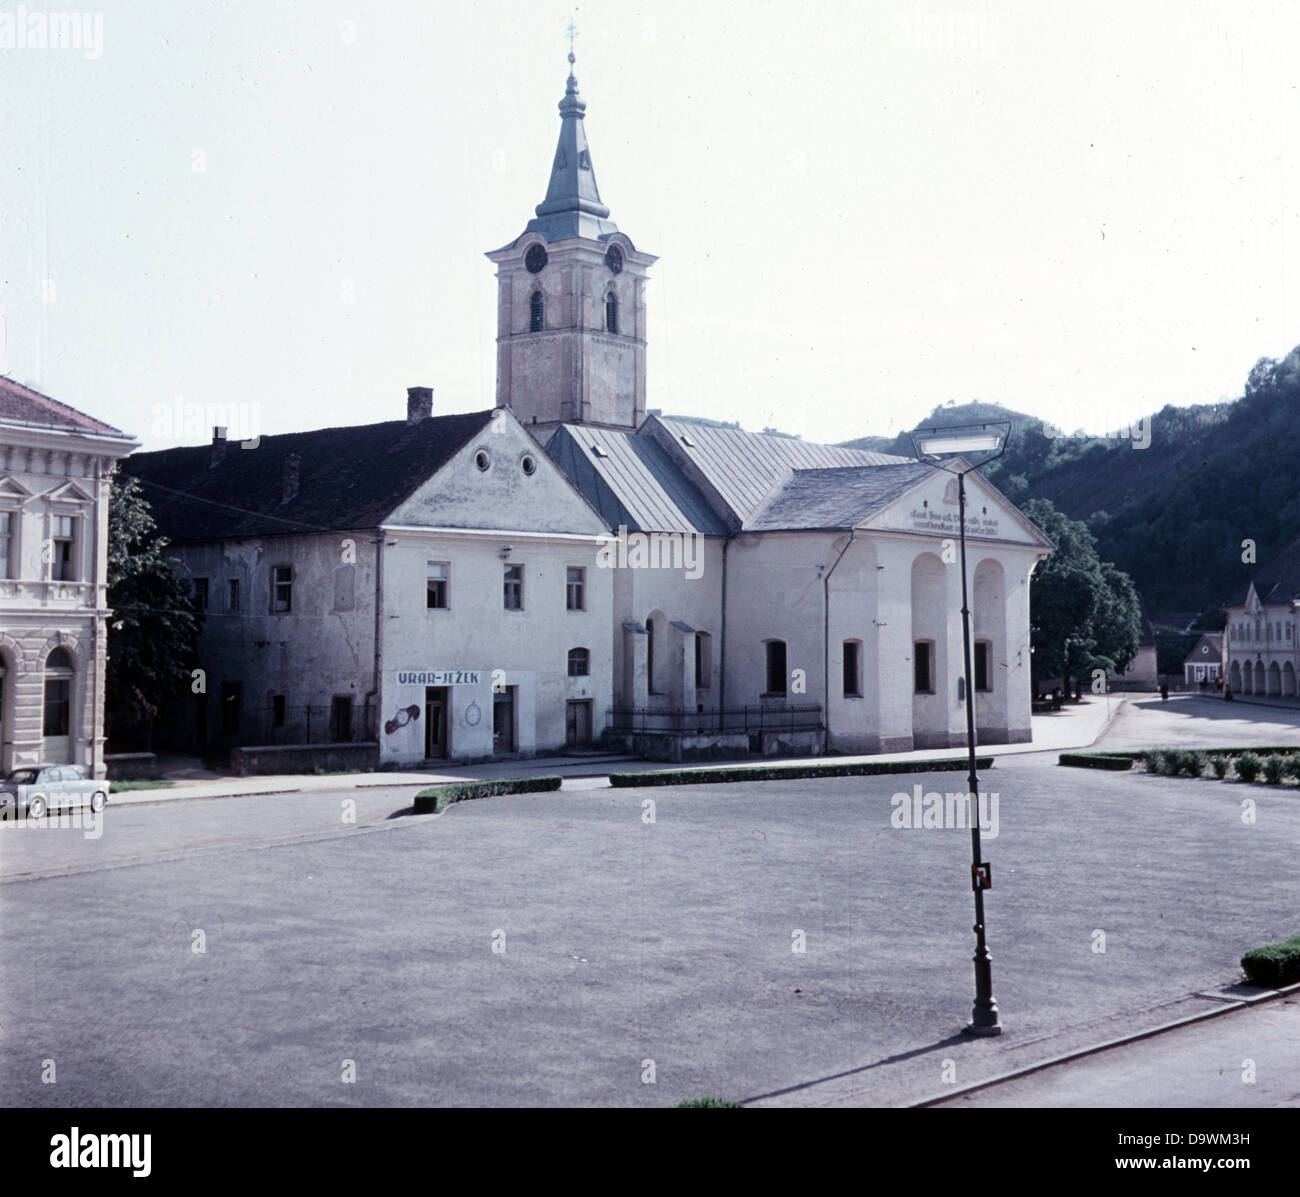 Città di Slavonska Pozega (Pozega) in Croazia, Iugoslavia.. Regione della Slavonia. Chiesa in rovina nel centro citta'. Foto Stock